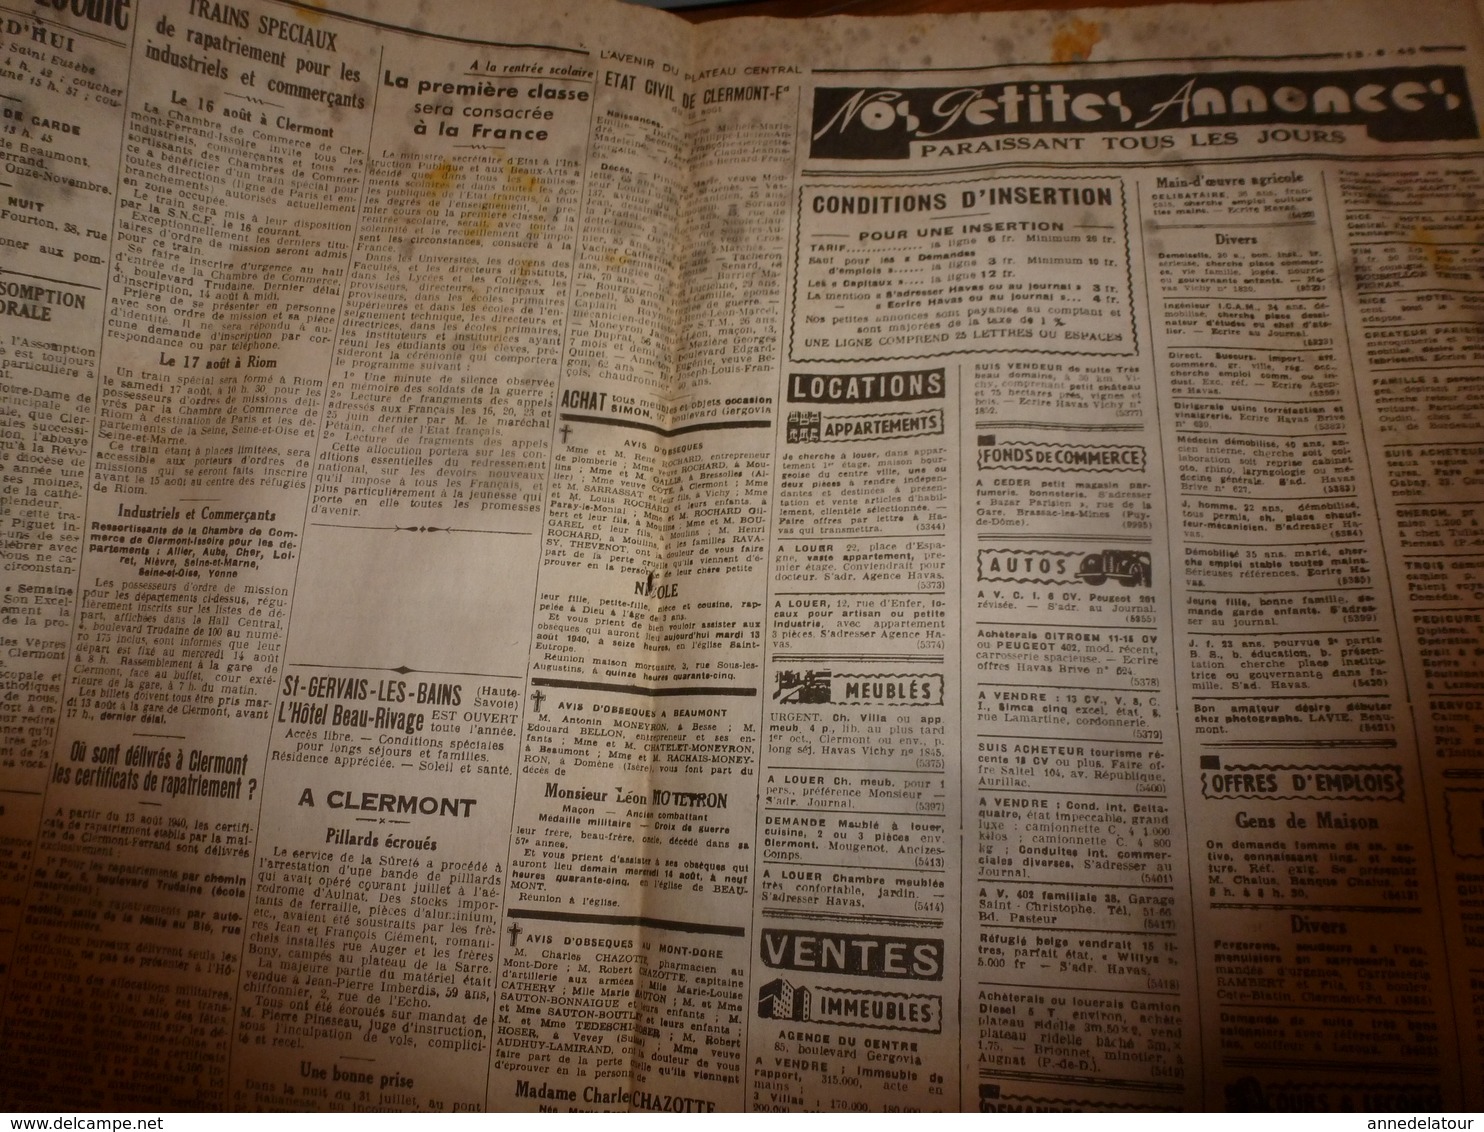 13 août 1940:rare journal double "non coupé" après impression--> L'AVENIR du PLATEAU CENTRAL et LA DEPÊCHE